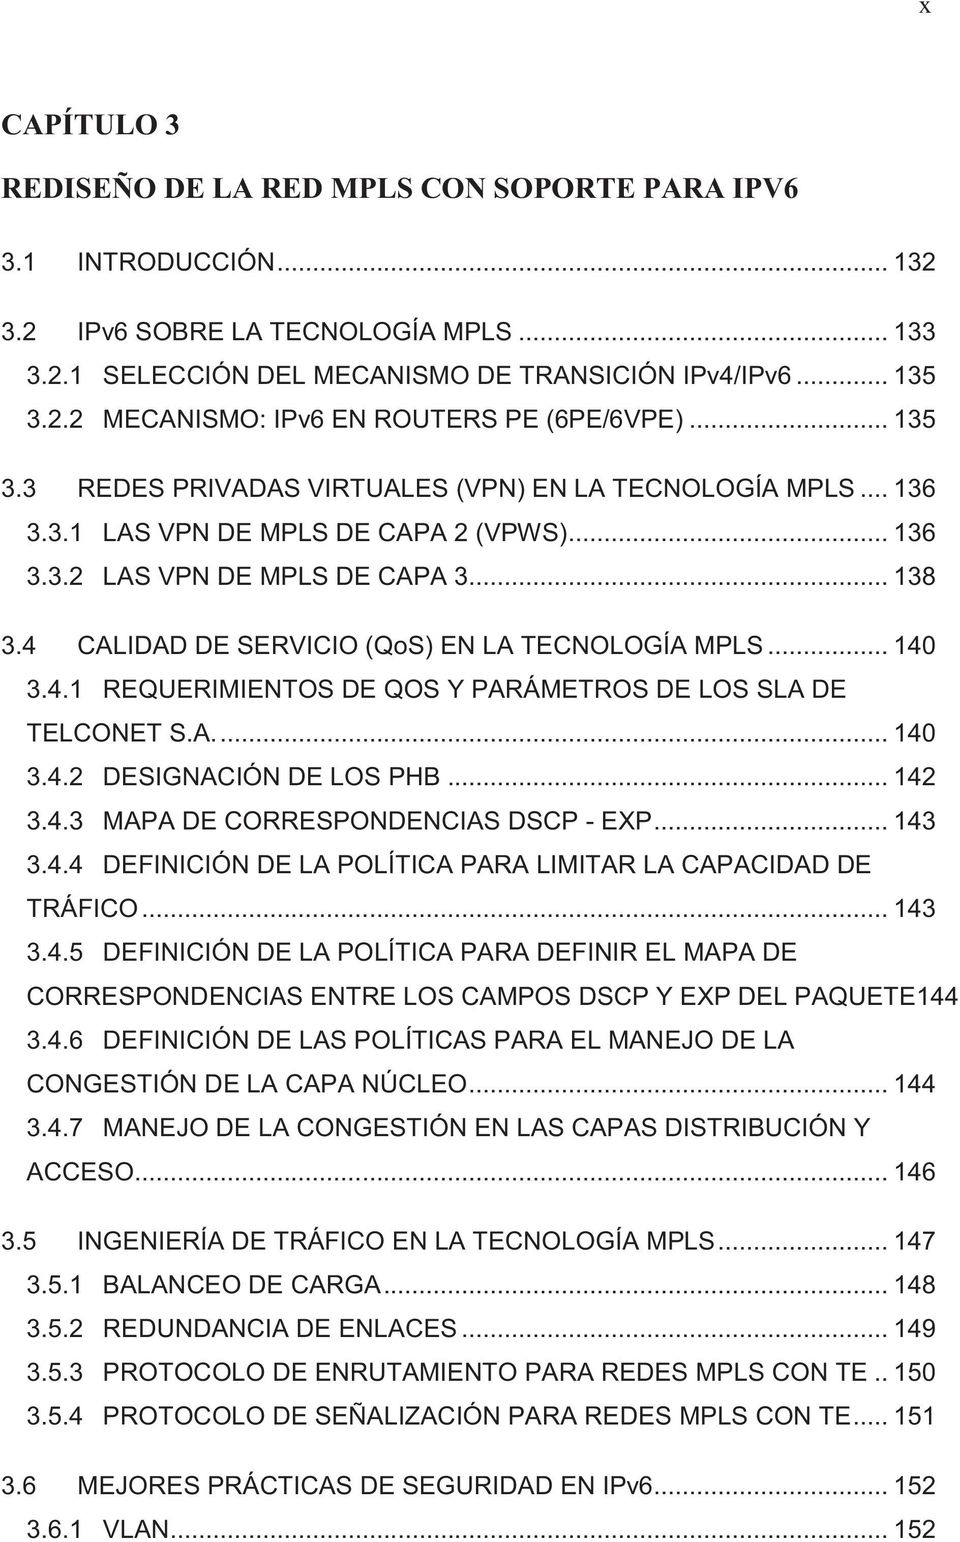 4 CALIDAD DE SERVICIO (QoS) EN LA TECNOLOGÍA MPLS... 140 3.4.1 REQUERIMIENTOS DE QOS Y PARÁMETROS DE LOS SLA DE TELCONET S.A.... 140 3.4.2 DESIGNACIÓN DE LOS PHB... 142 3.4.3 MAPA DE CORRESPONDENCIAS DSCP - EXP.